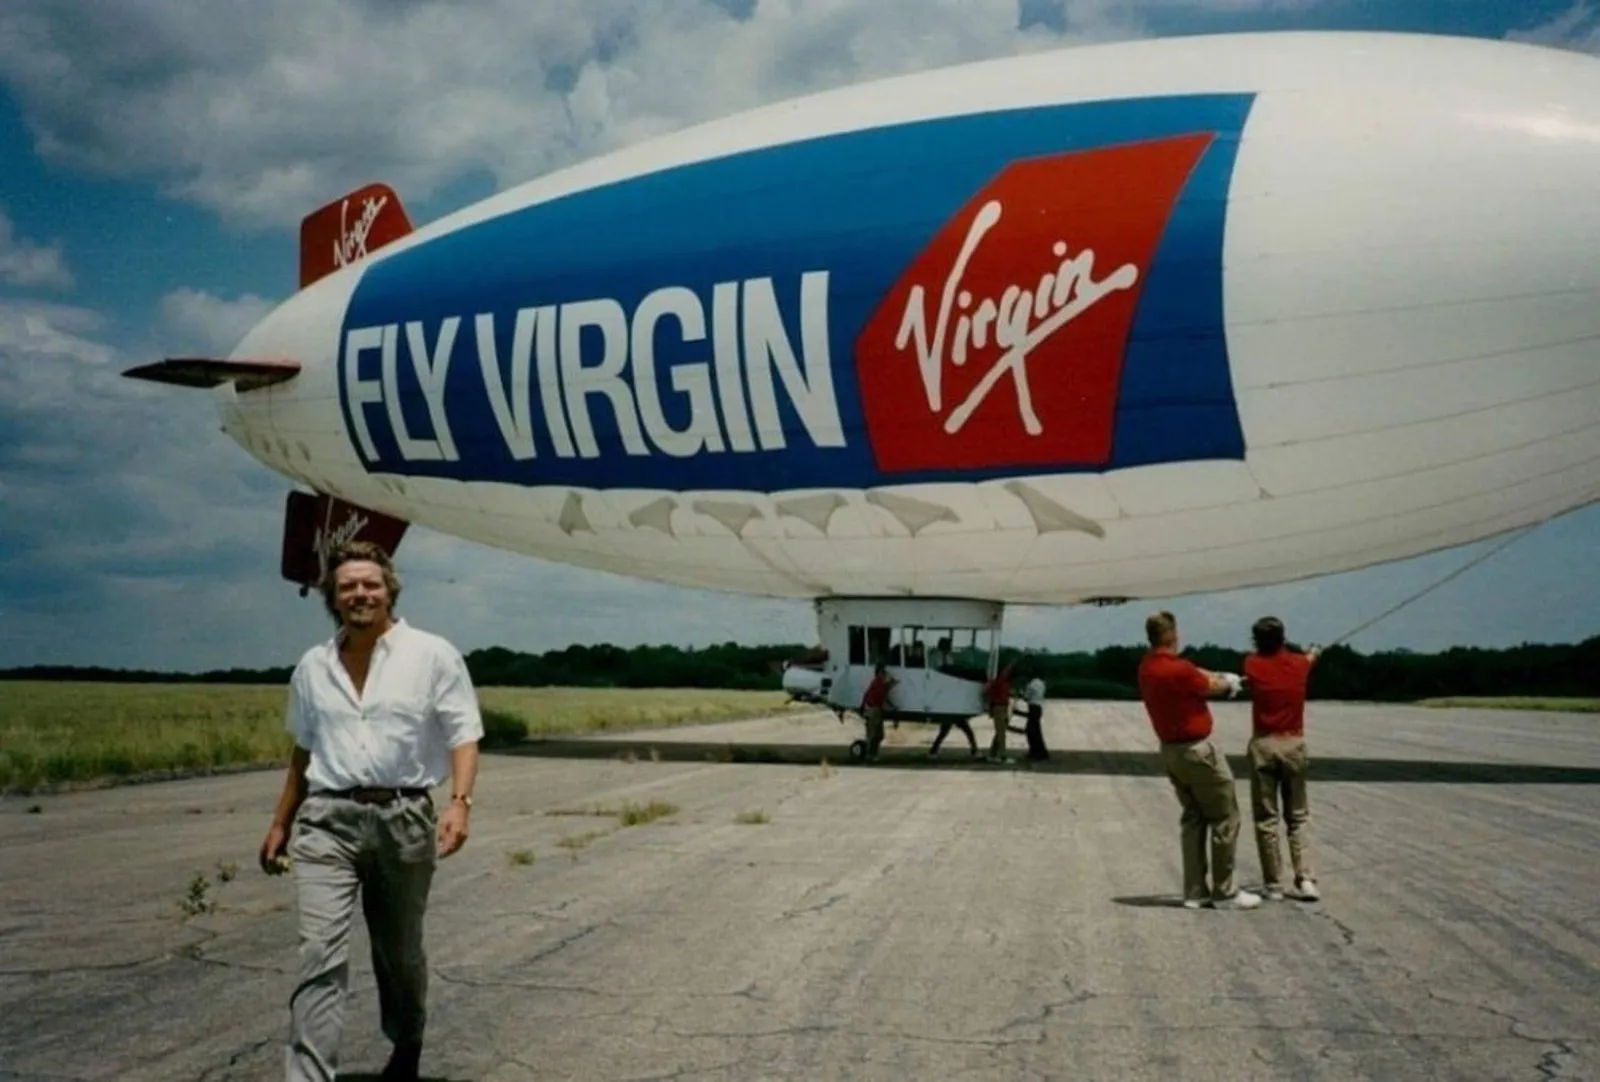 Karena Corona Perusahaan Penerbangan Virgin Airlines Terancam Bangkrut